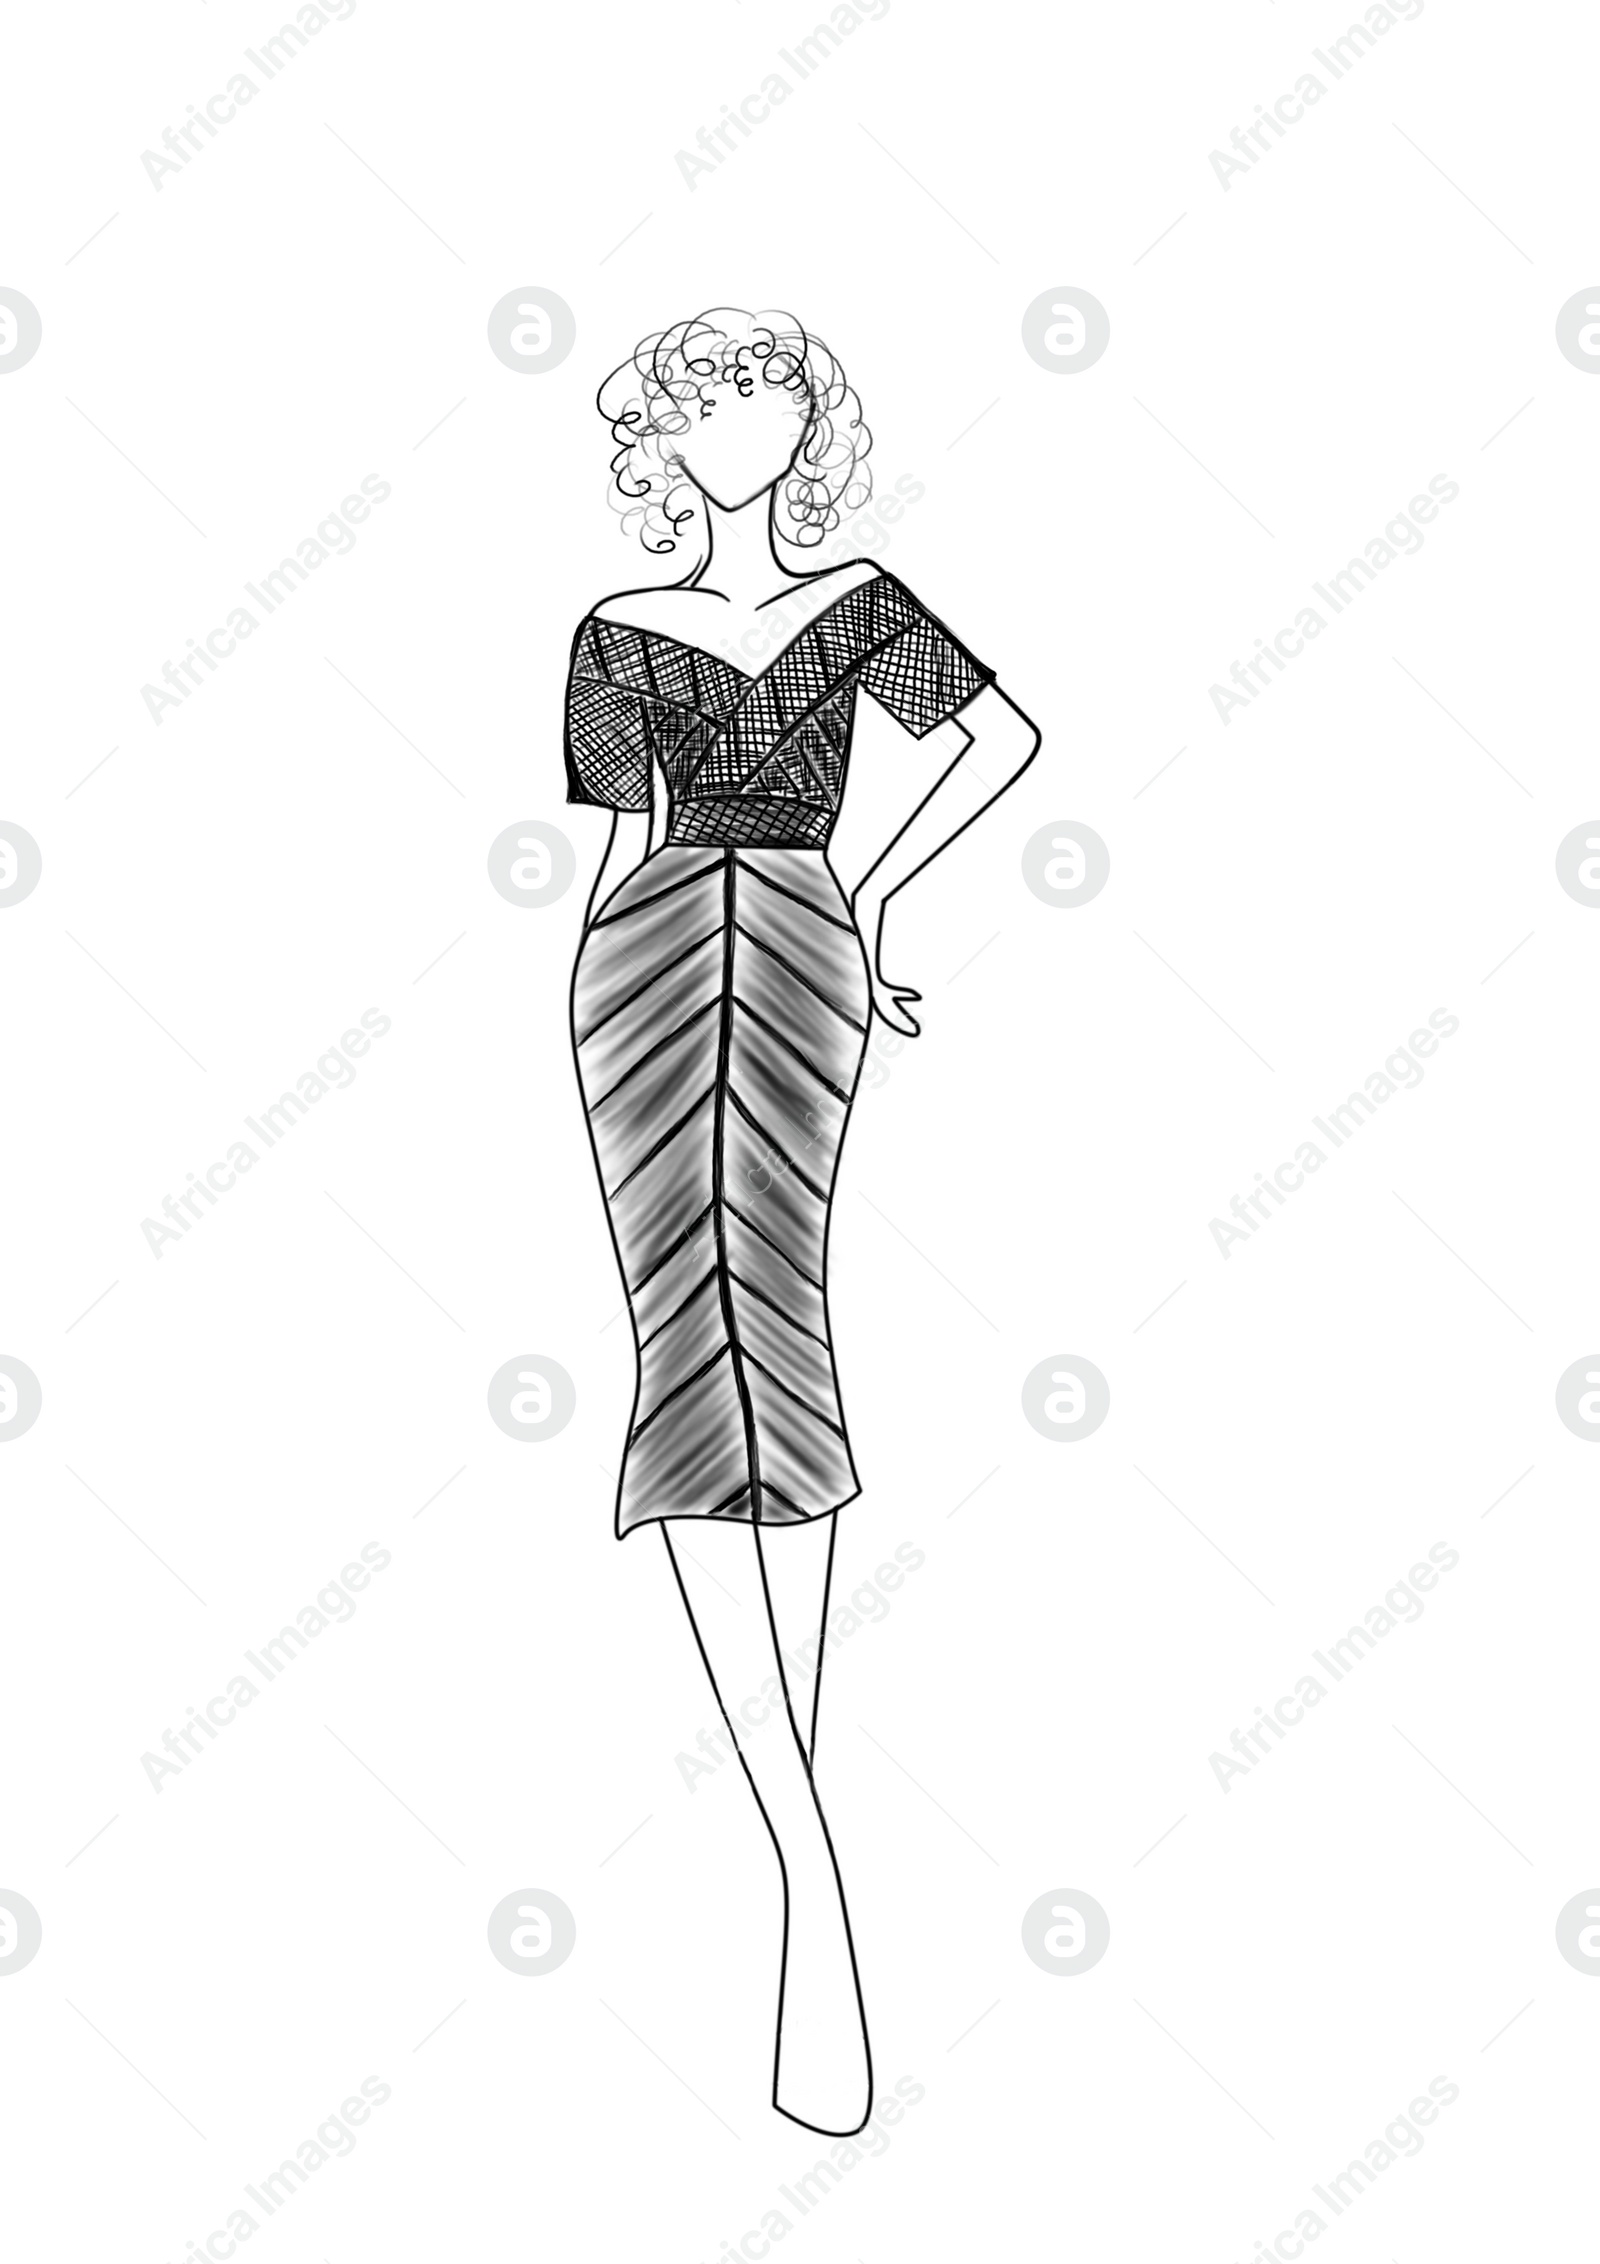 Illustration of Fashion sketch. Model wearing stylish dress on white background, illustration